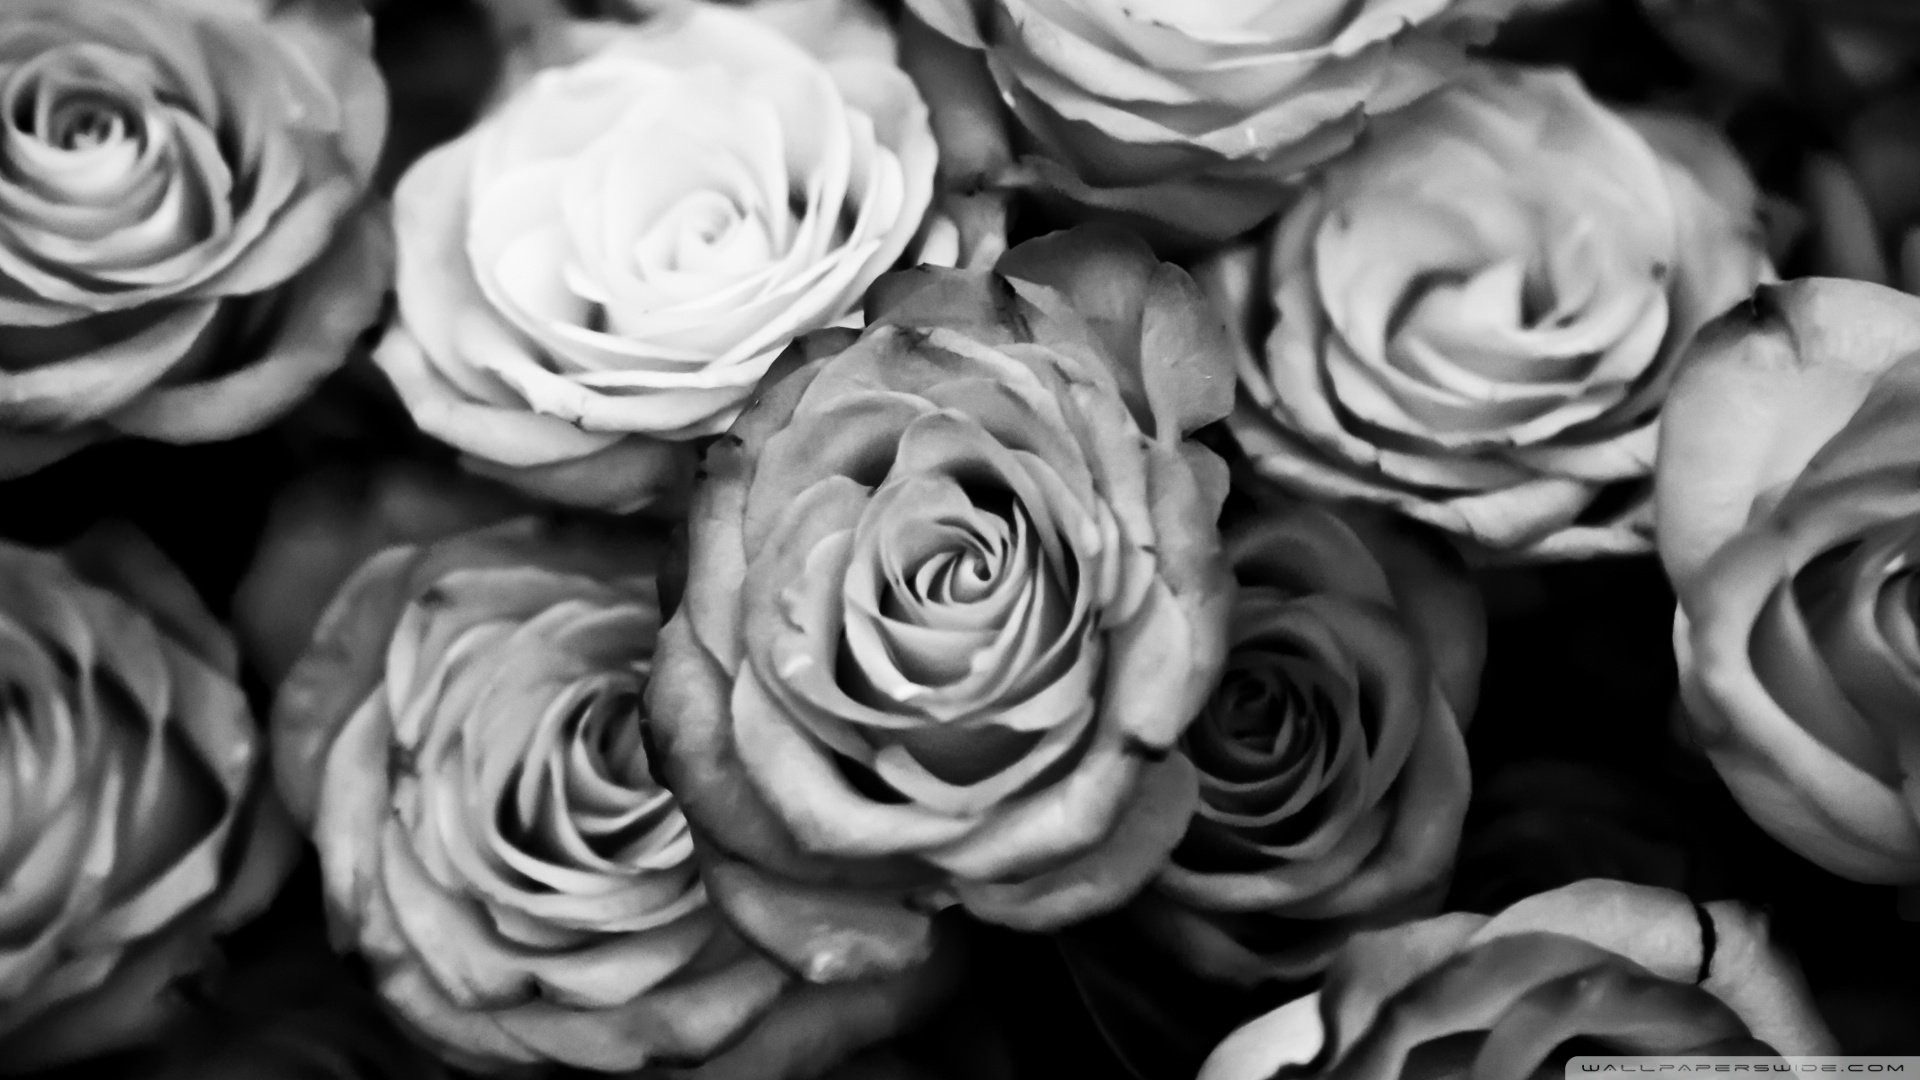 1920x1080 Single white rose black background